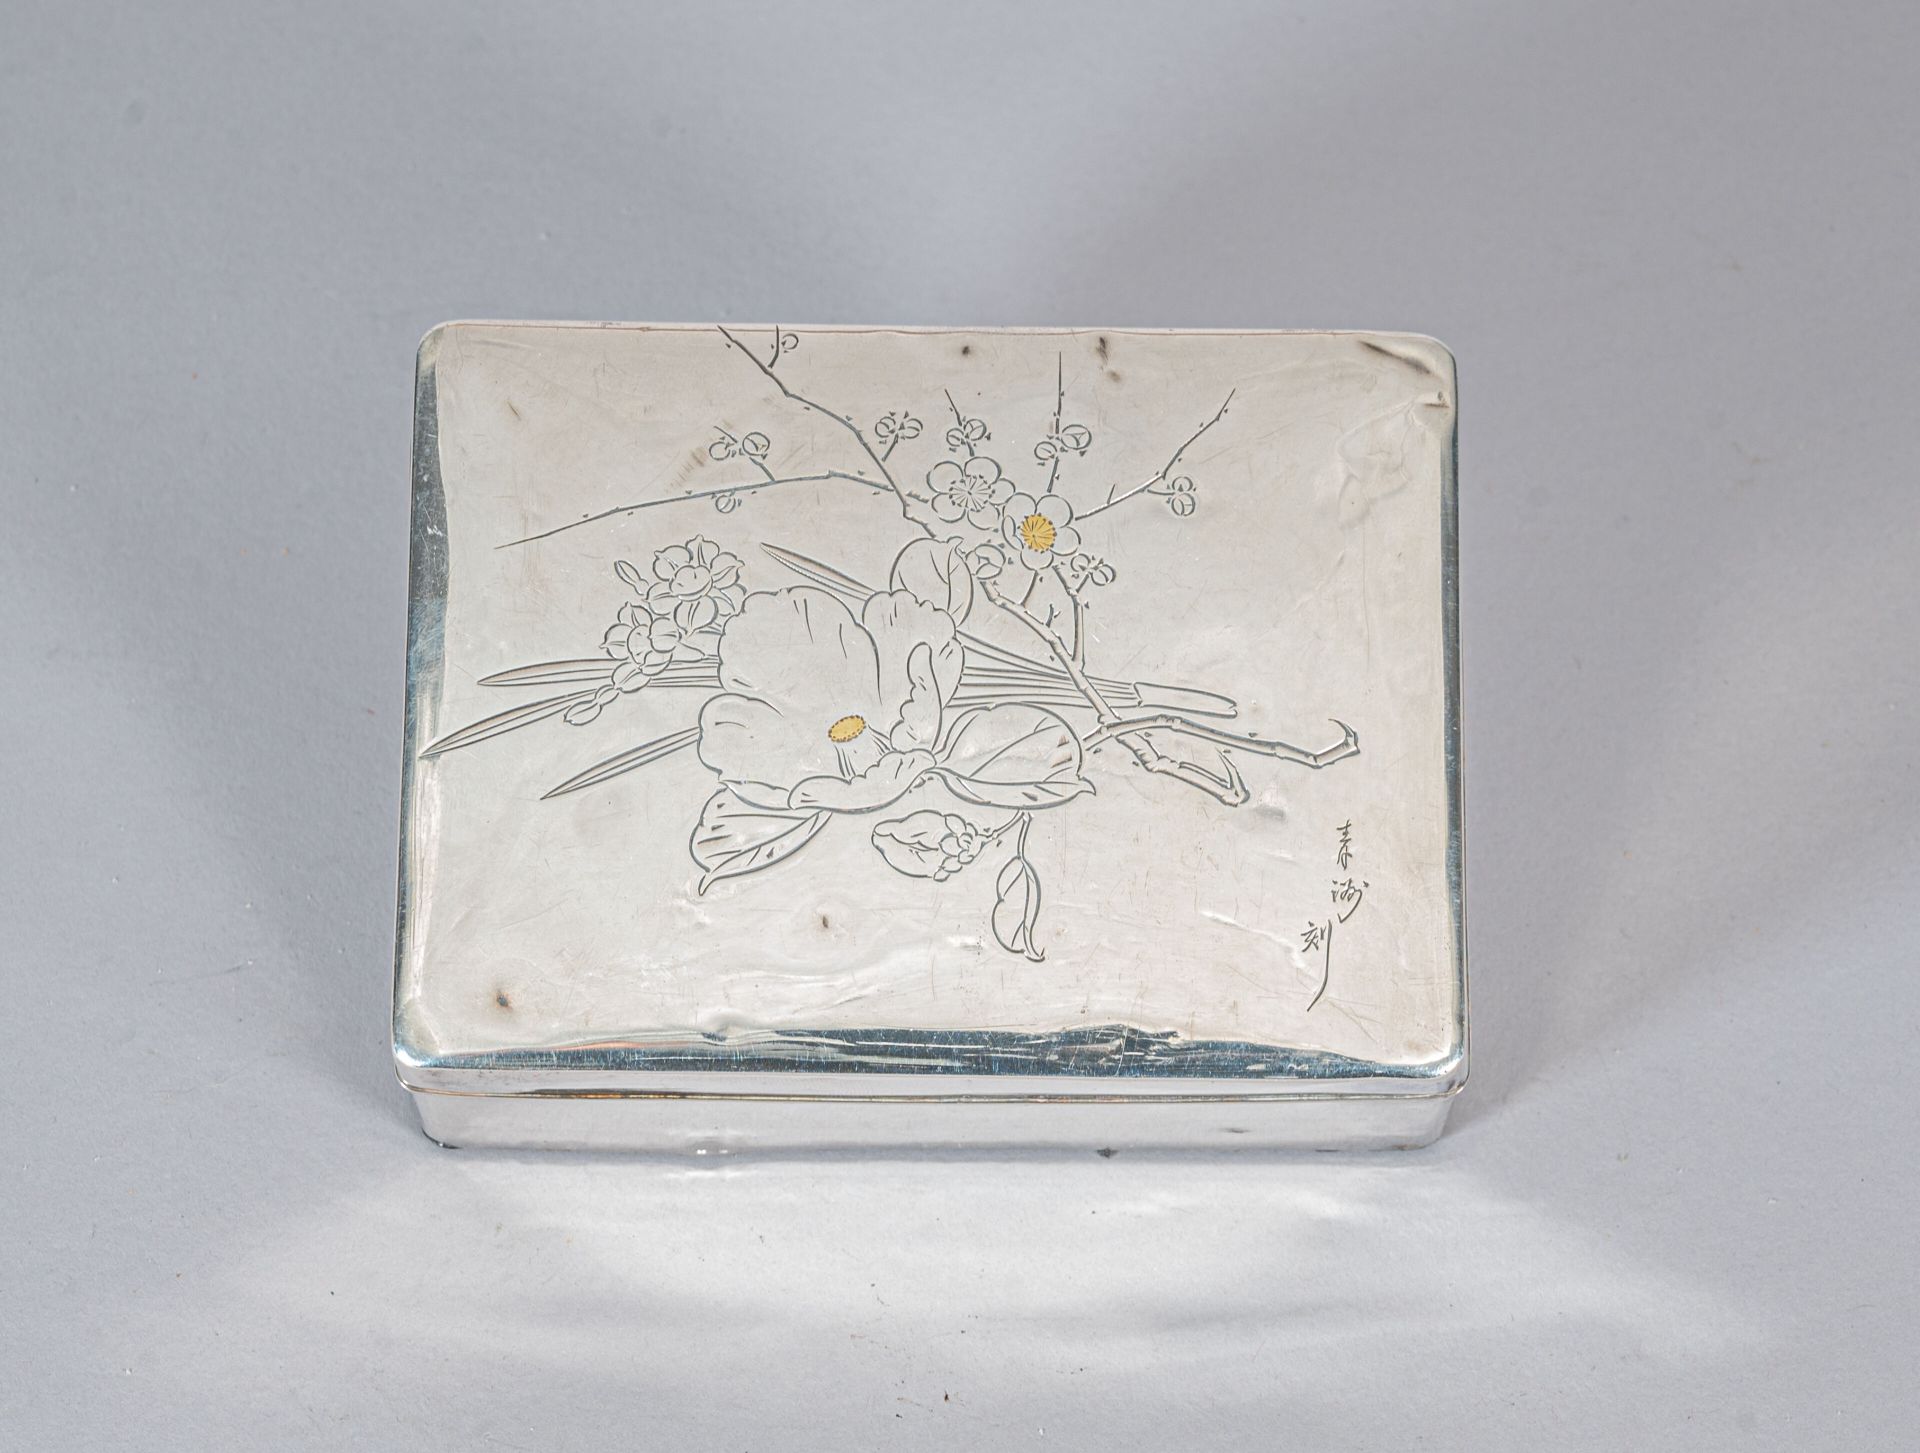 Null 银质（800°/°°）烟盒和烟盒，日本，明治时期（1868-1912年）
烟盒上刻有镶嵌装饰（各种金属），图案是一位妇女在河前（在盒盖内外），外侧署名&hellip;